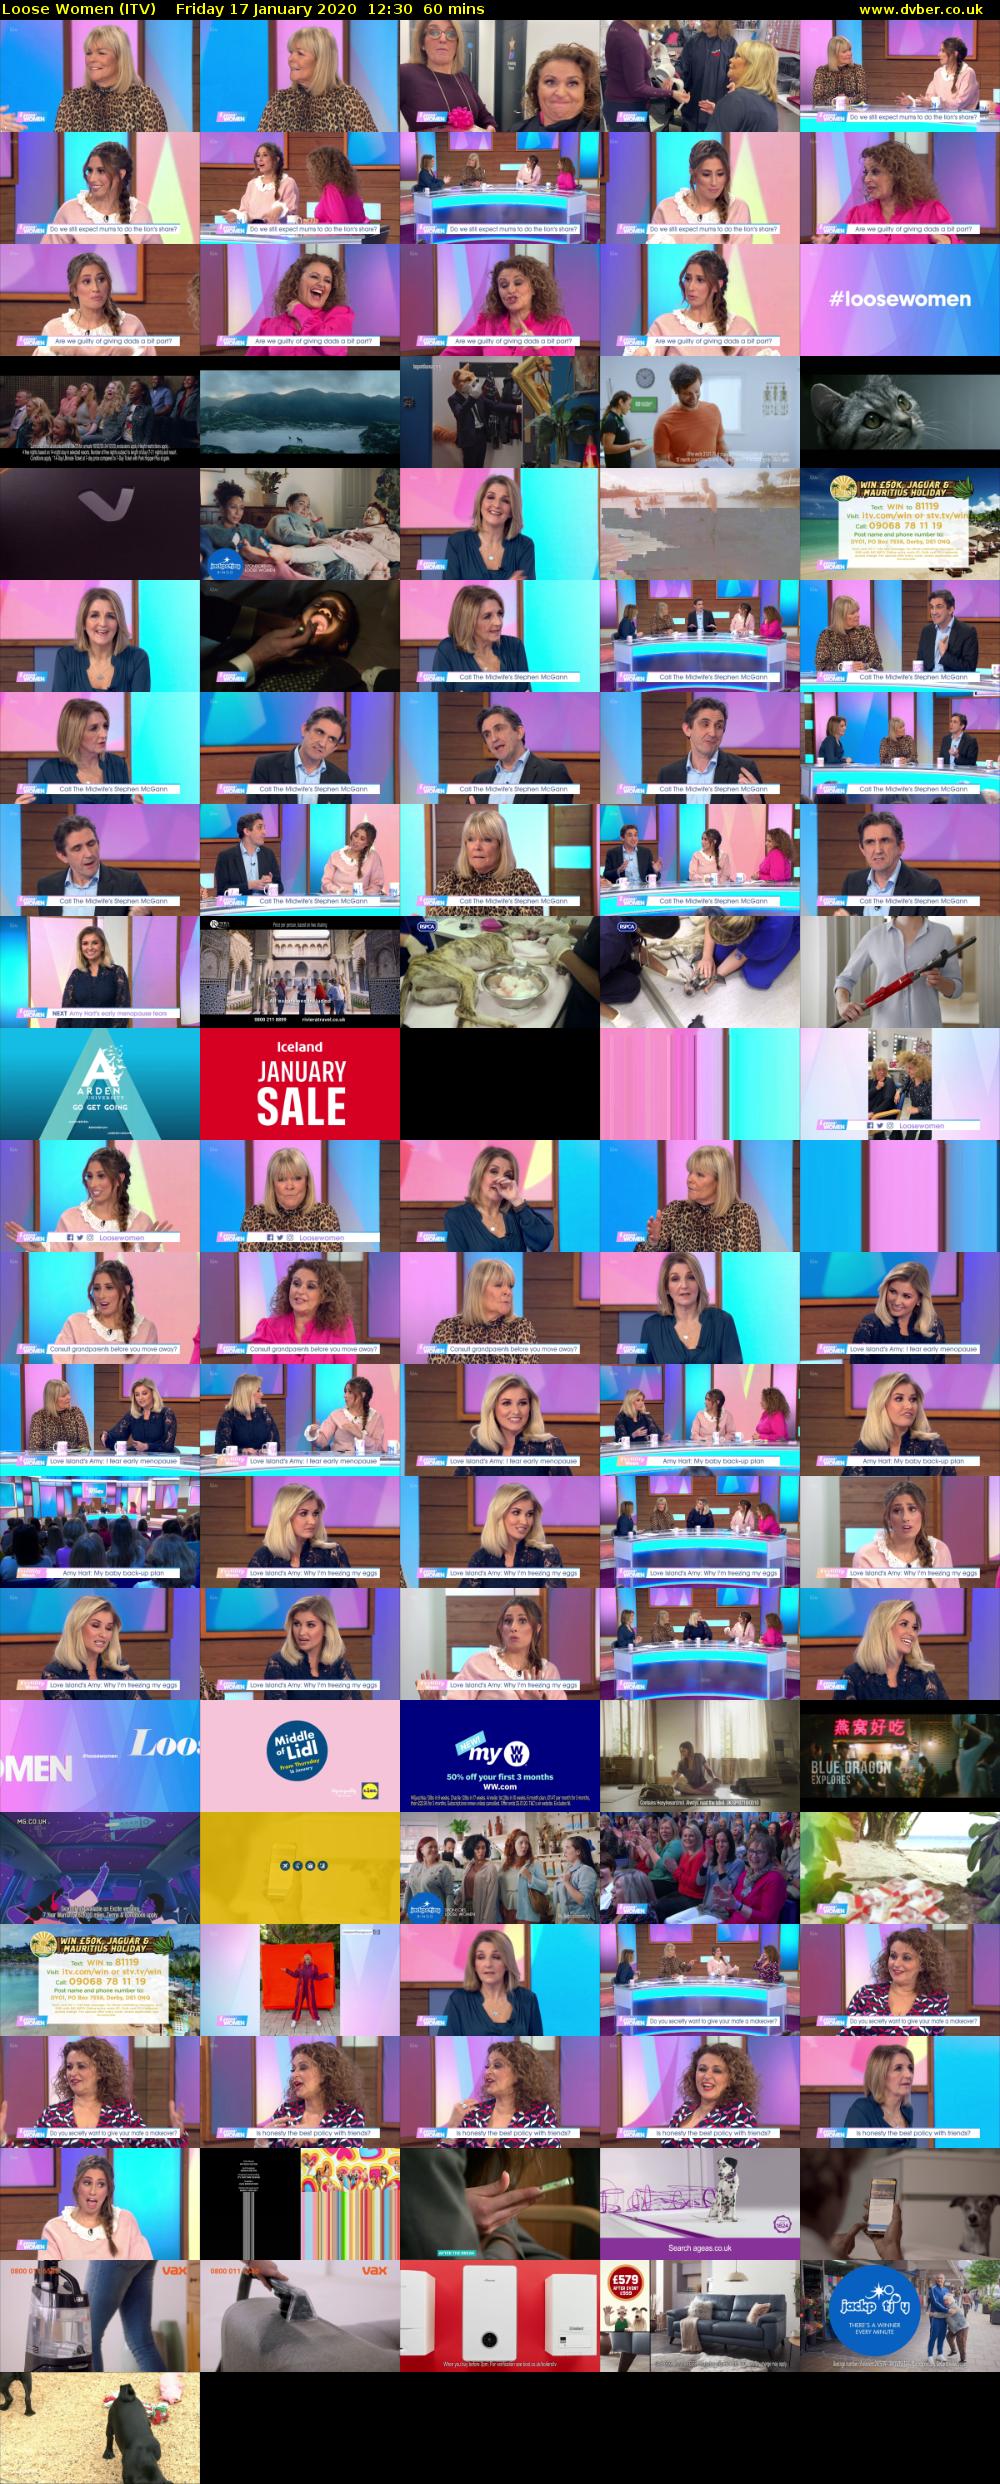 Loose Women (ITV) Friday 17 January 2020 12:30 - 13:30